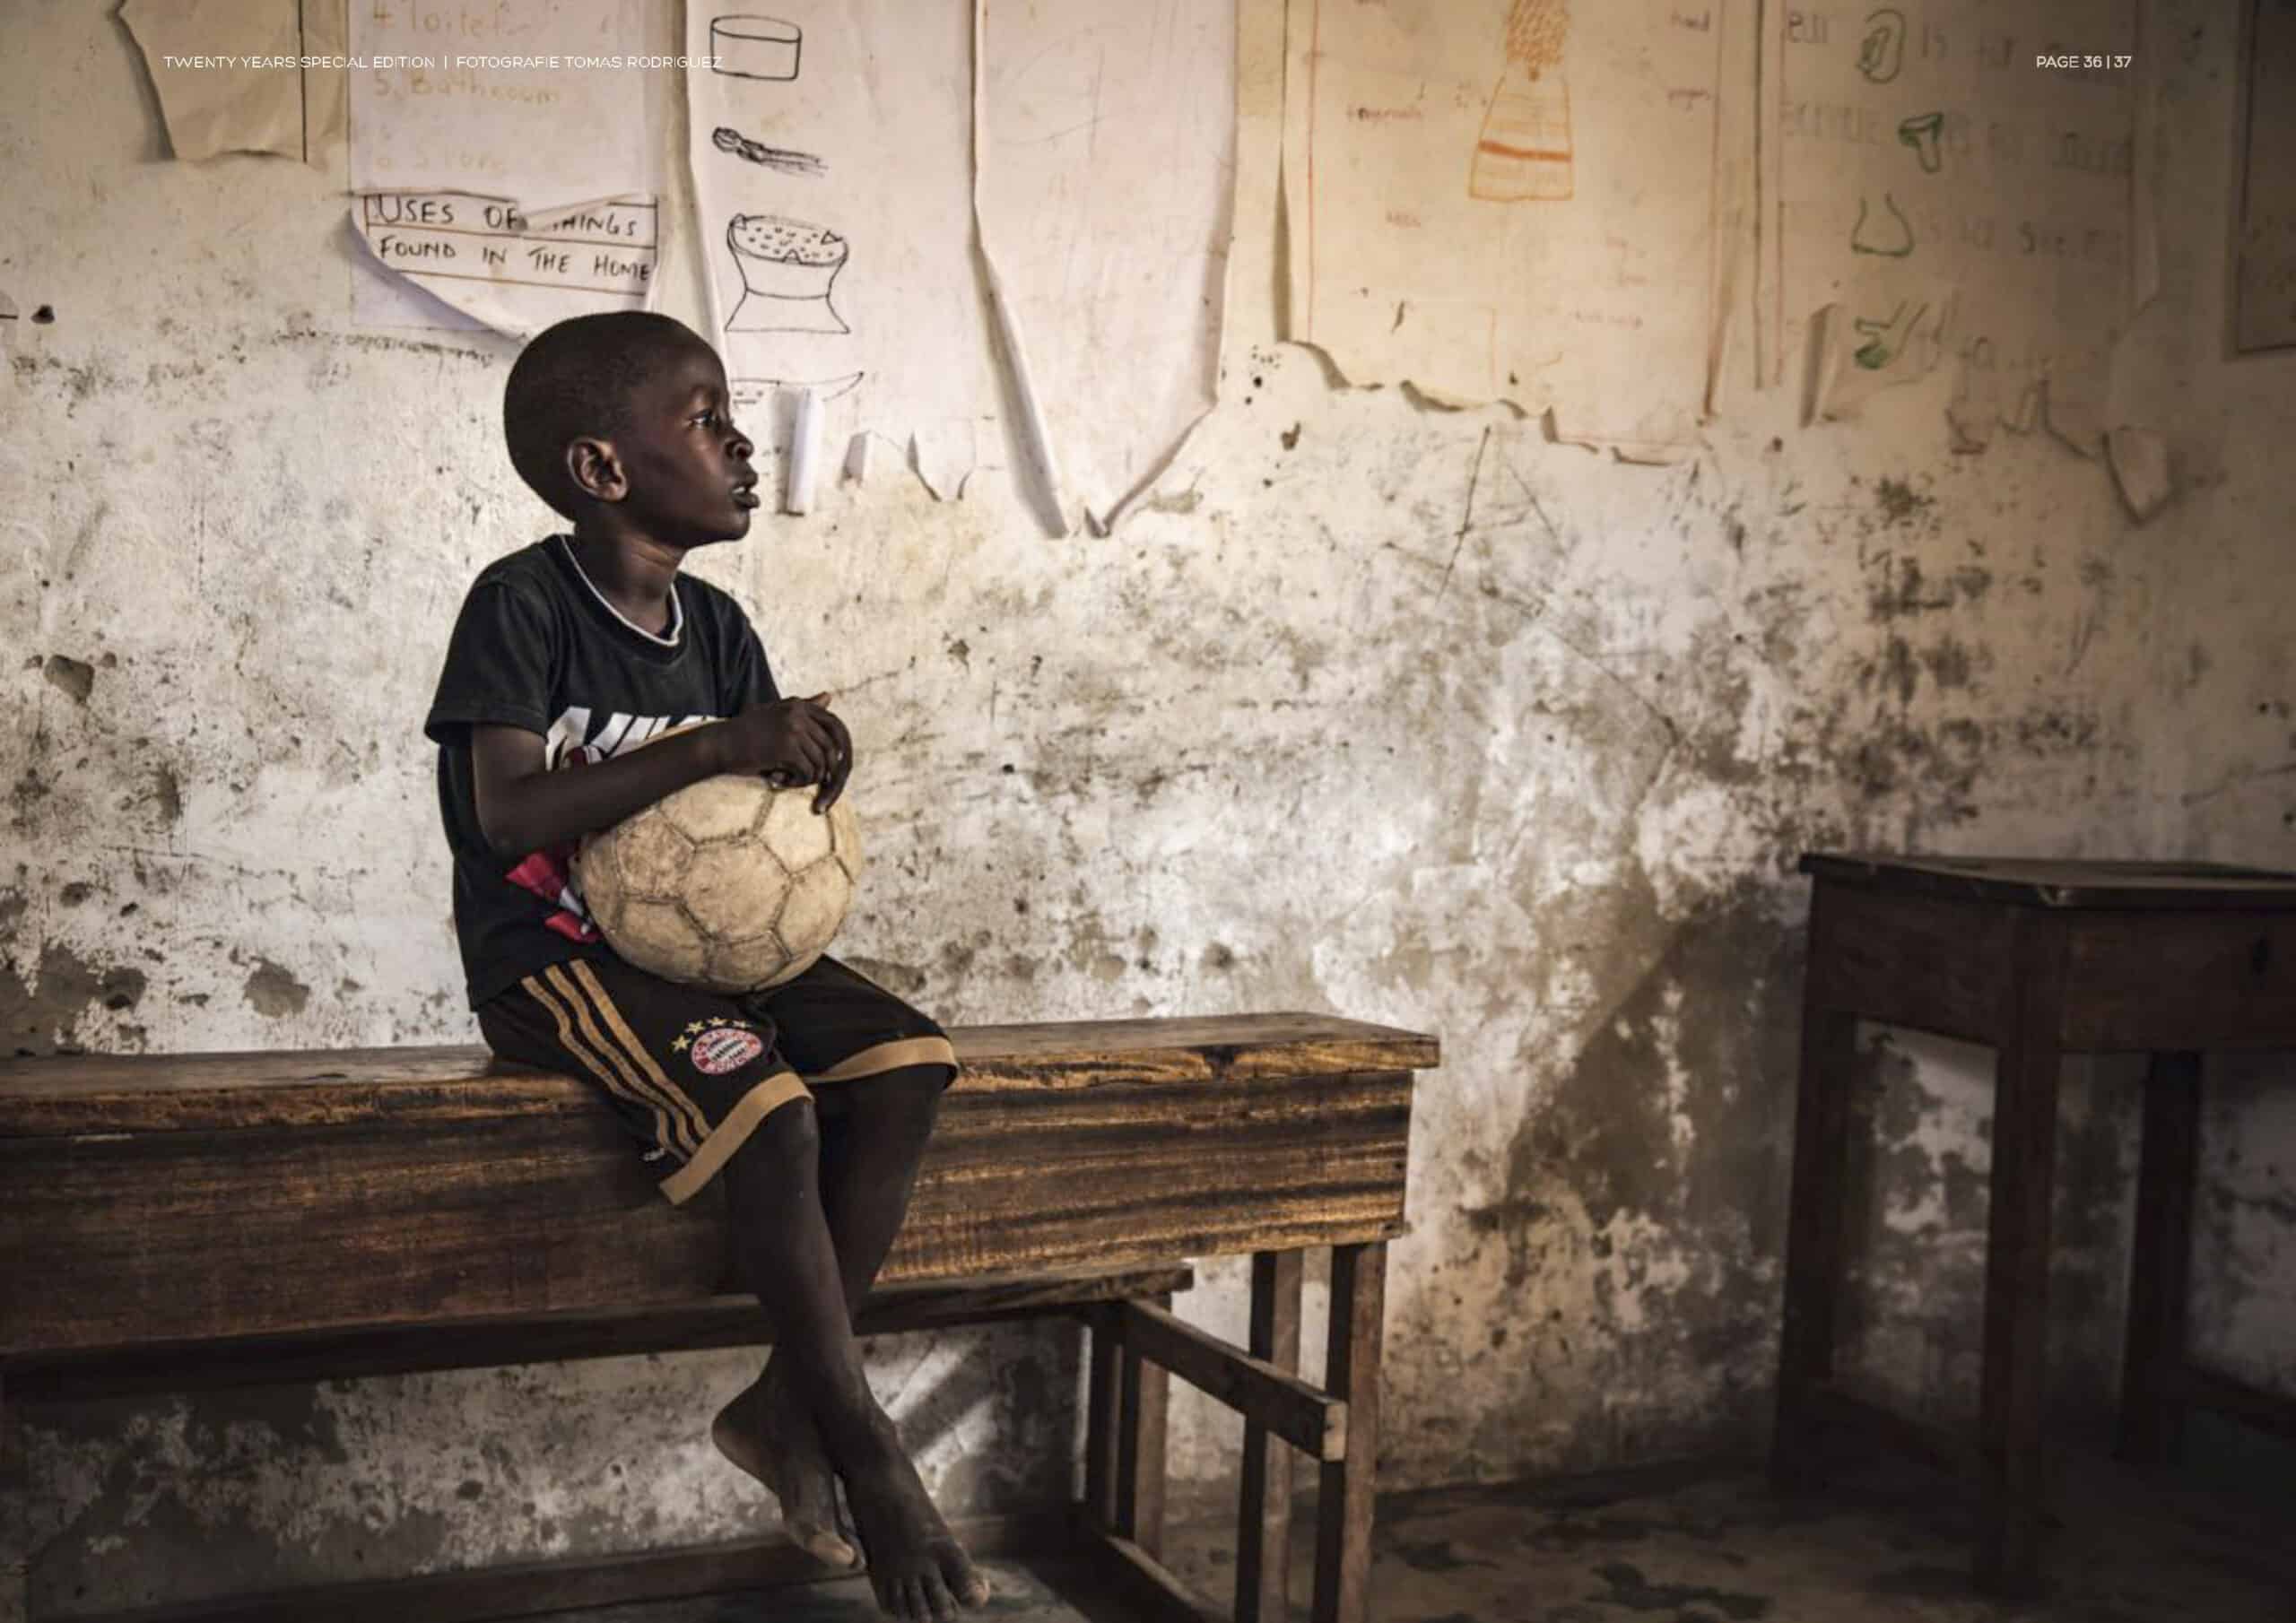 Ein kleiner Junge sitzt mit einem Fußball in der Hand auf einer Holzbank in einem Klassenzimmer mit Zeichnungen und Unterrichtsmaterialien an den Wänden. © Fotografie Tomas Rodriguez